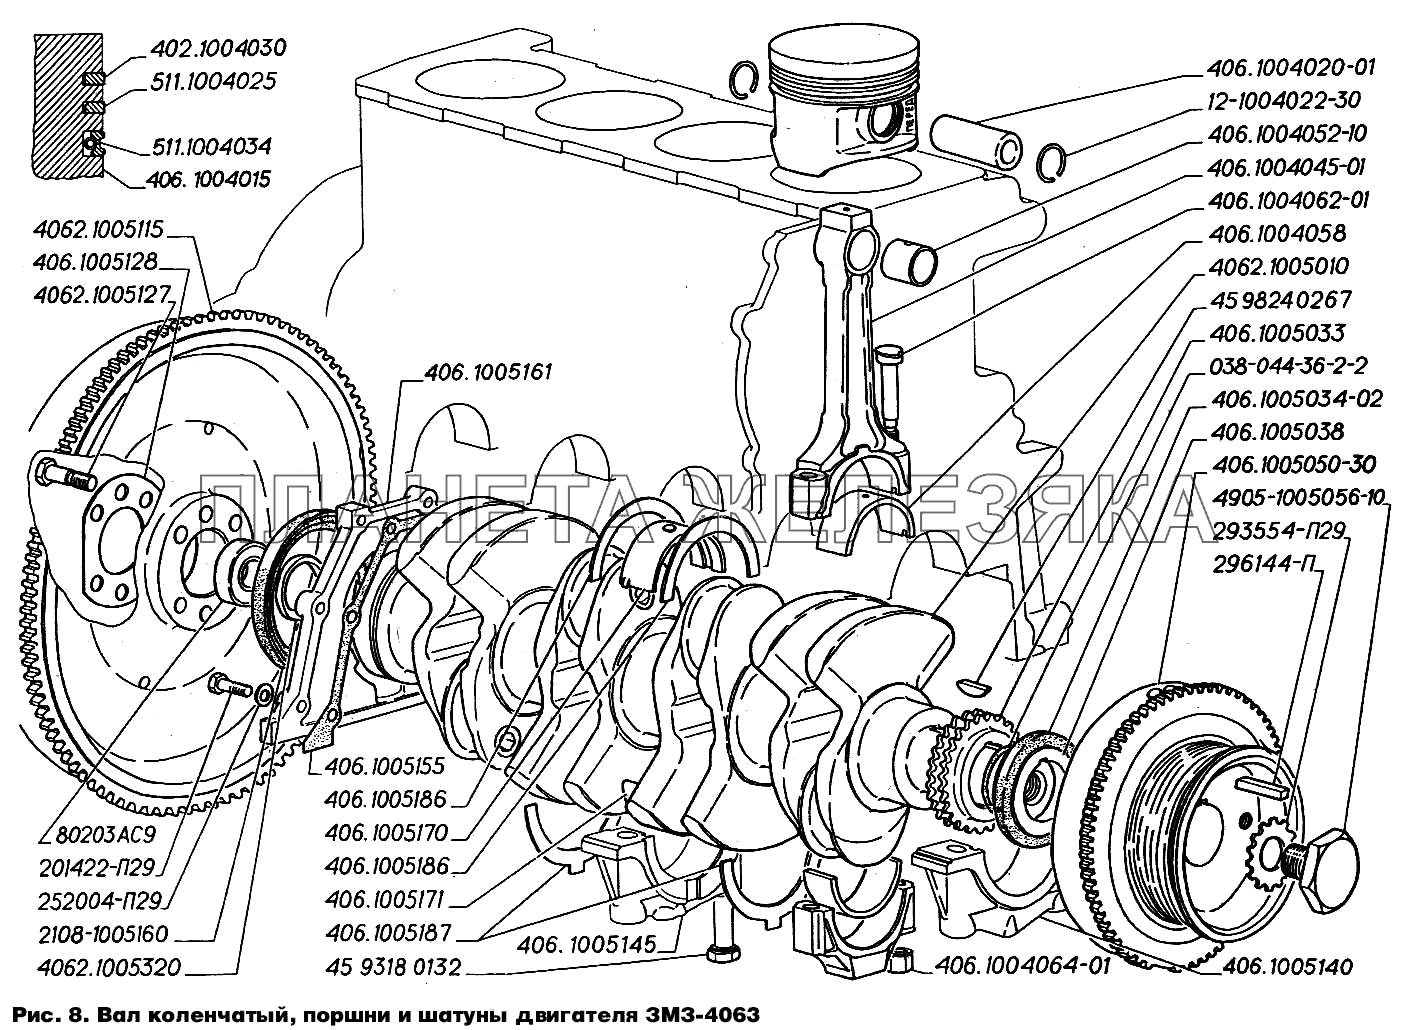 Вал коленчатый, поршни и шатуны двигателя ЗМЗ-4063 ГАЗ-2217 (Соболь)